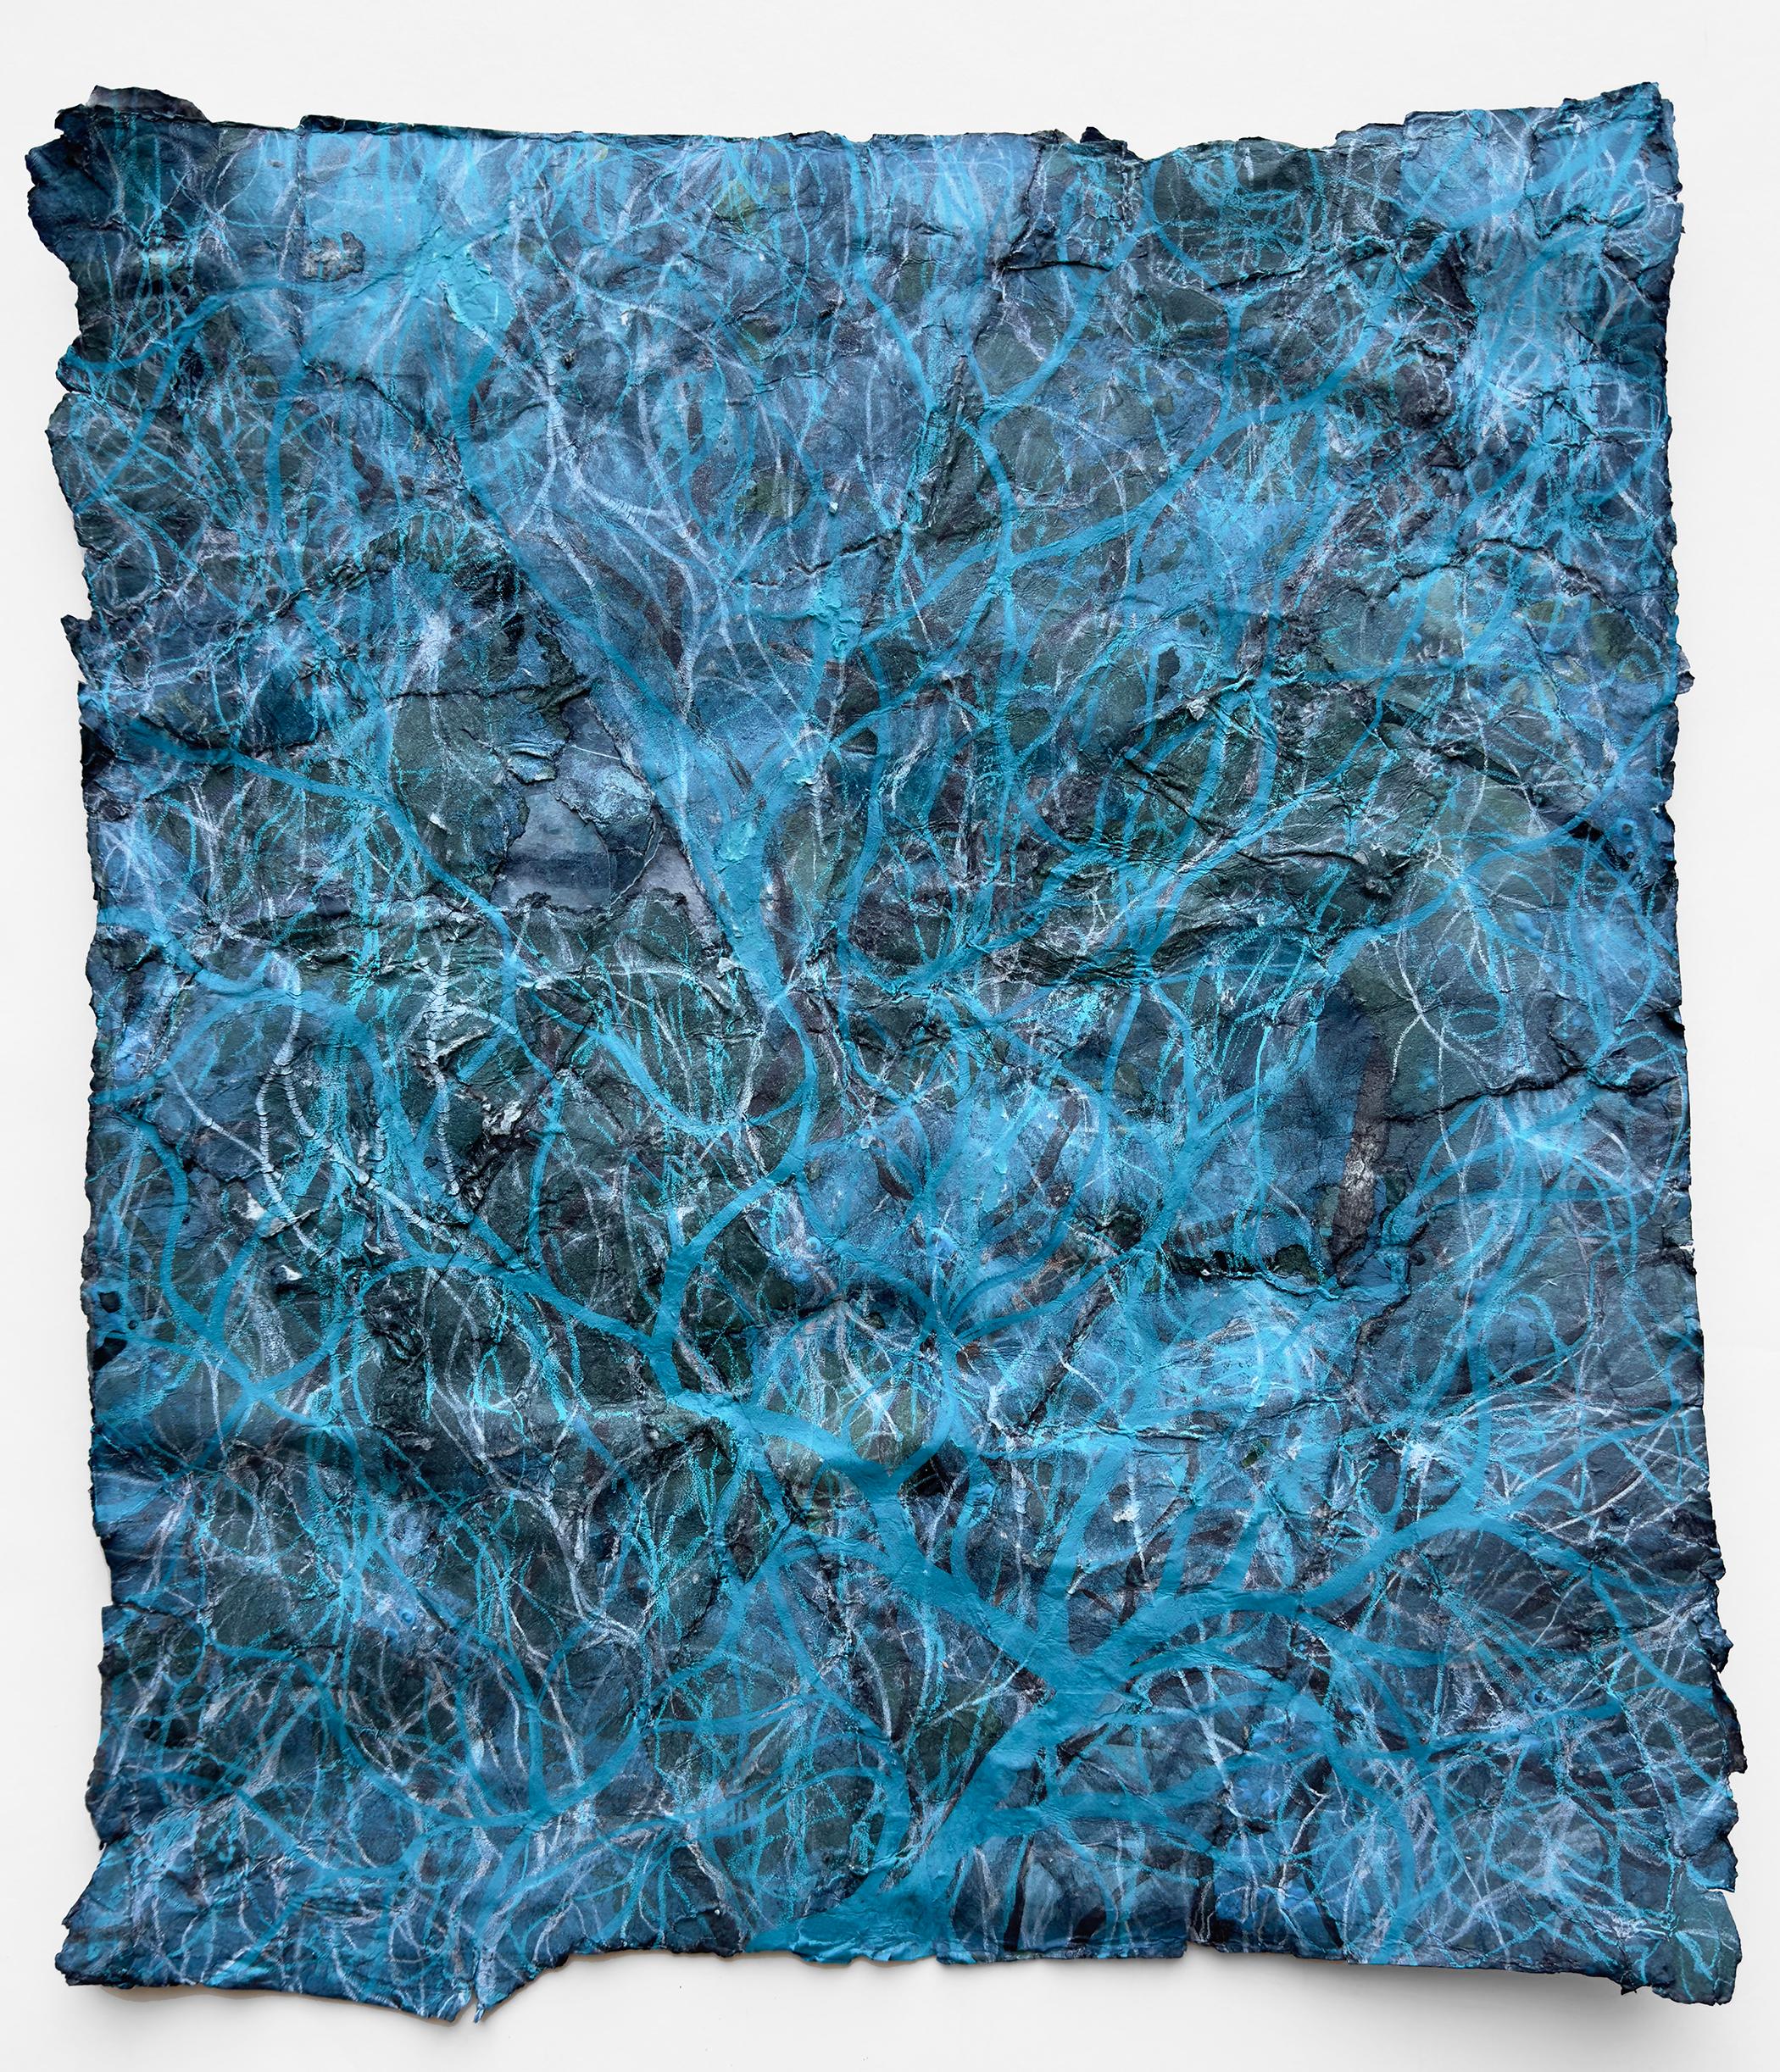 Tusche, Kreide und Glimmer auf gezeichnetem Papier
Gerahmt 26 x 22,75 x 1 Zoll, weißer Holzrahmen

Katherine Filice ist eine preisgekrönte amerikanische abstrakte Künstlerin, die 1963 geboren wurde und in Hollister, Nordkalifornien, USA, lebt und